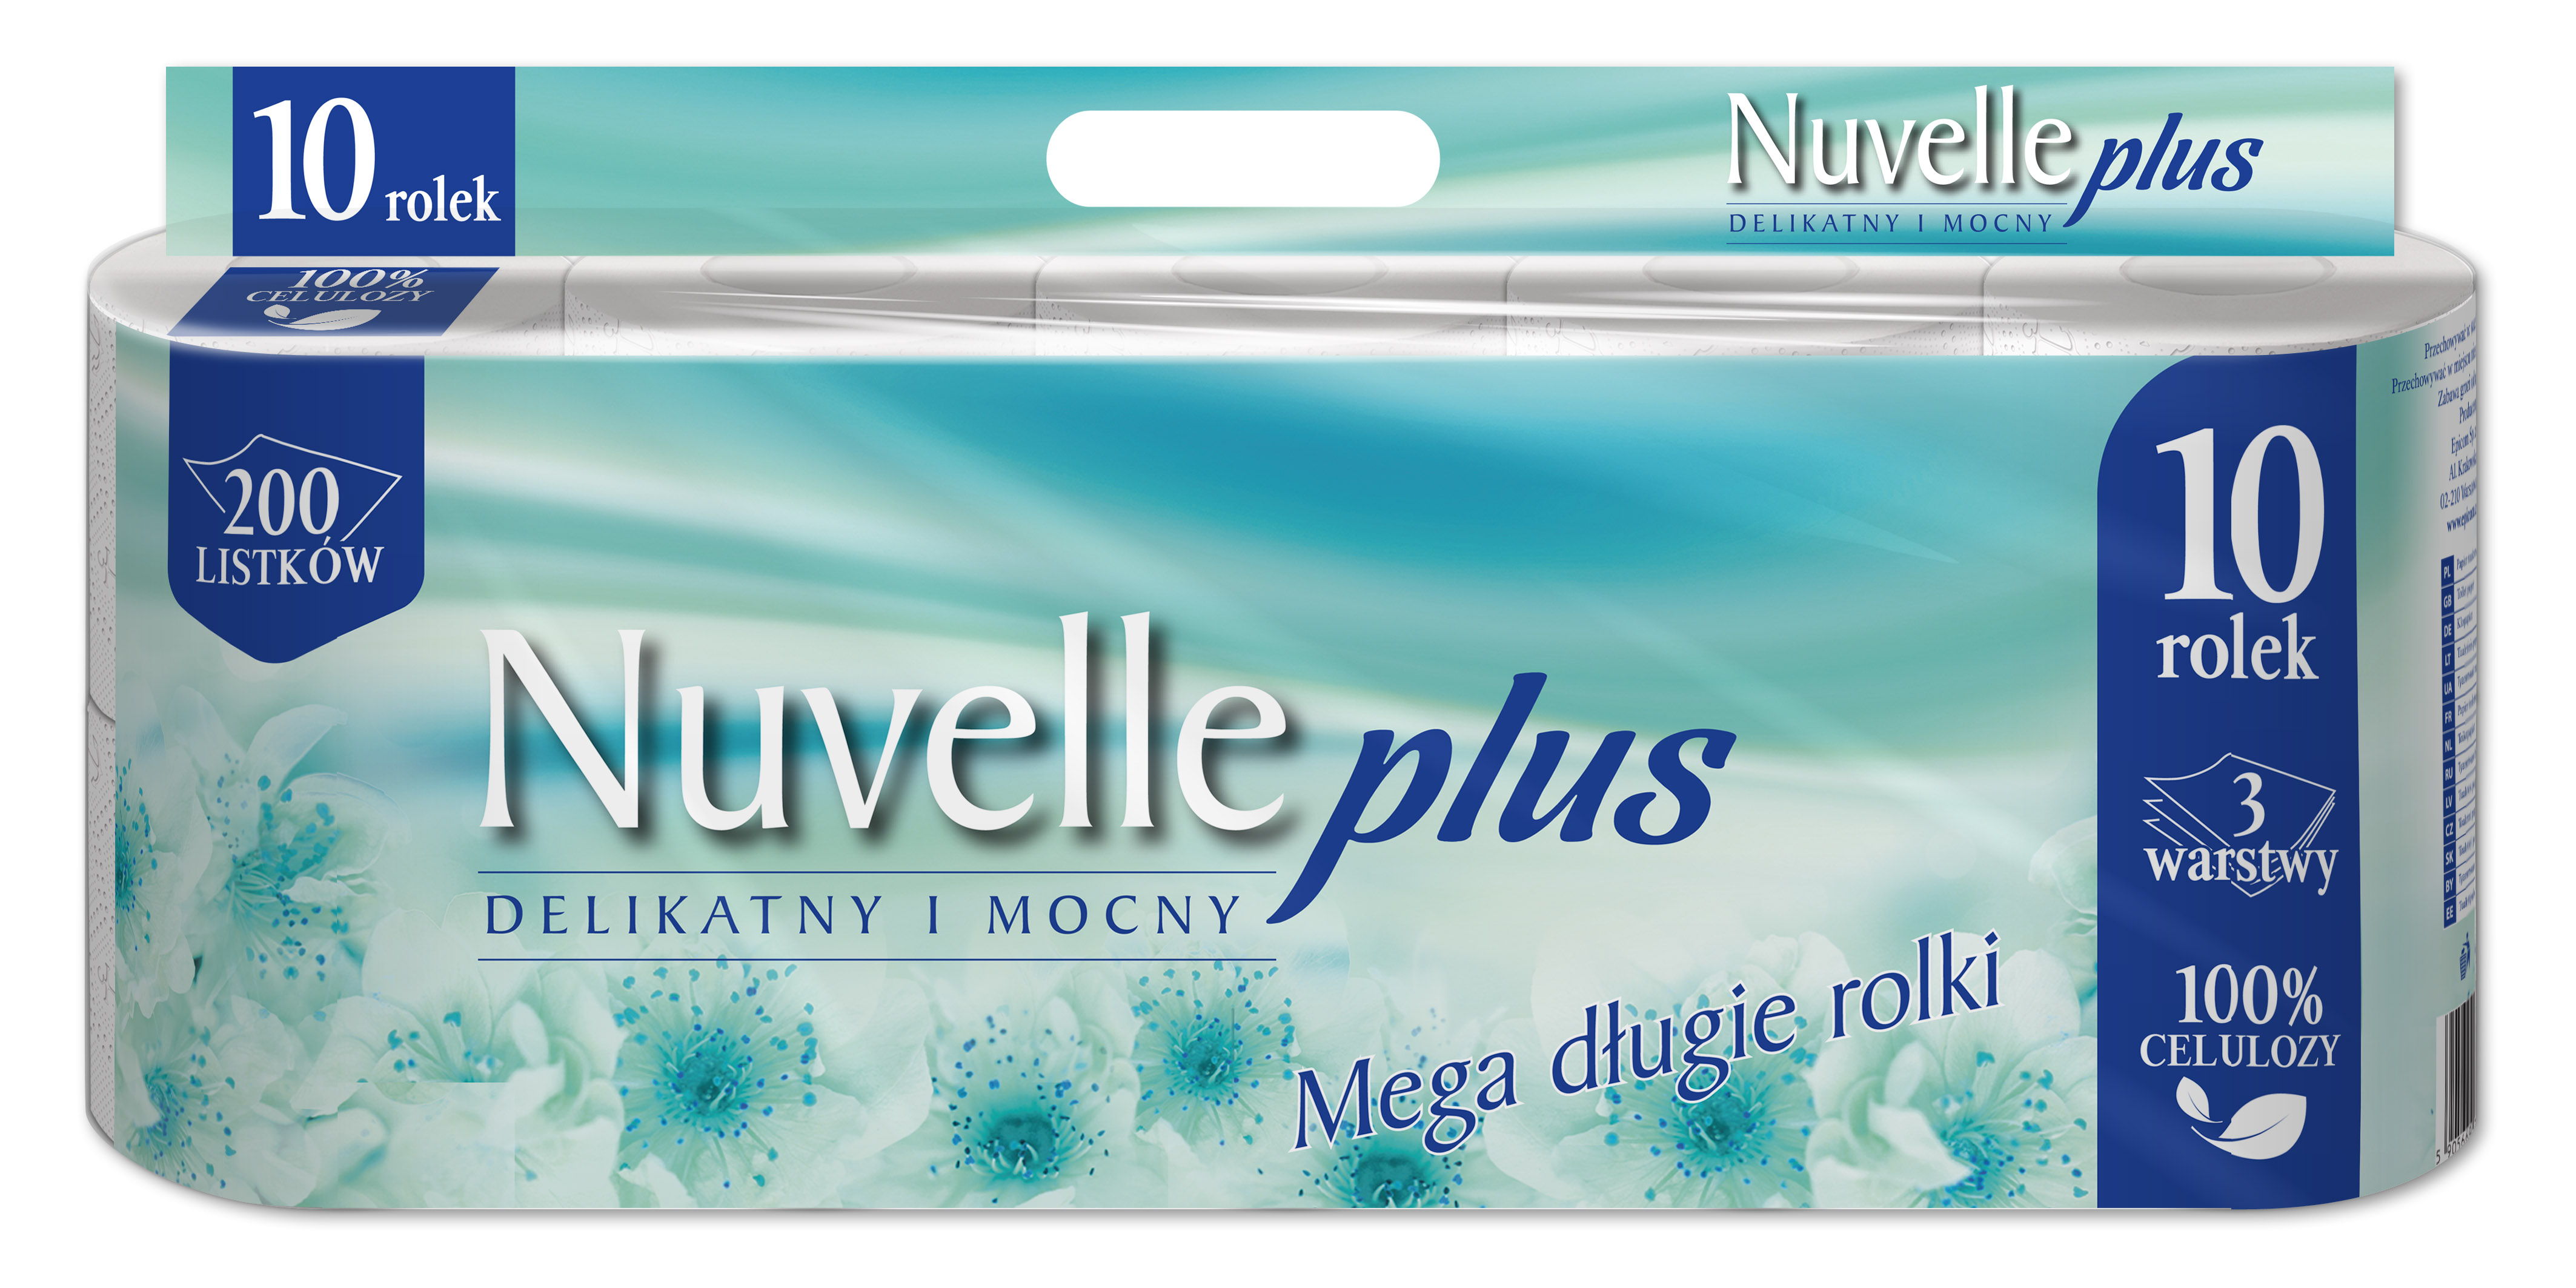 Papier toaletowy Nuvelle plus 10 rolek 200 listków w worku